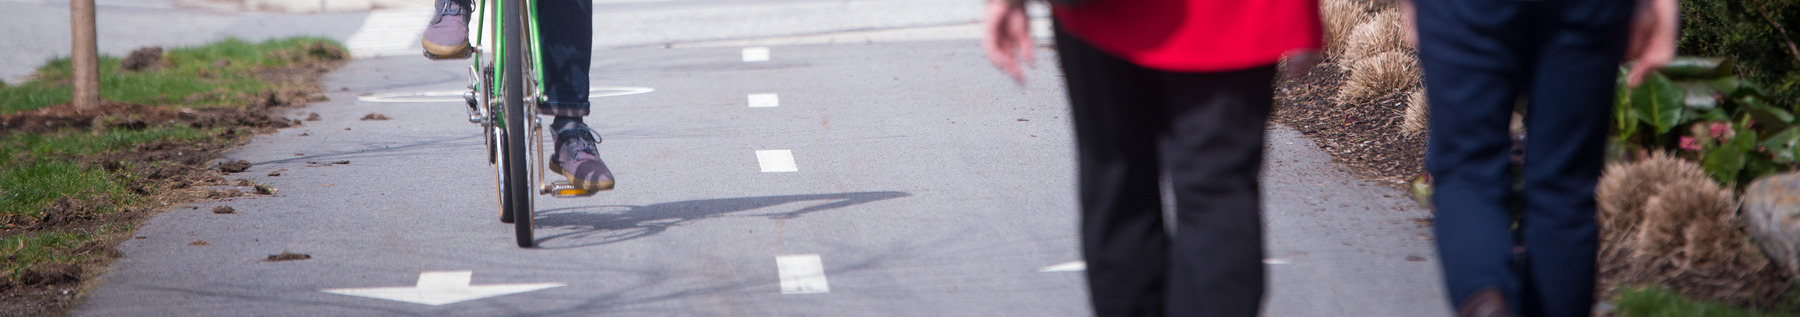 bike and pedestrians